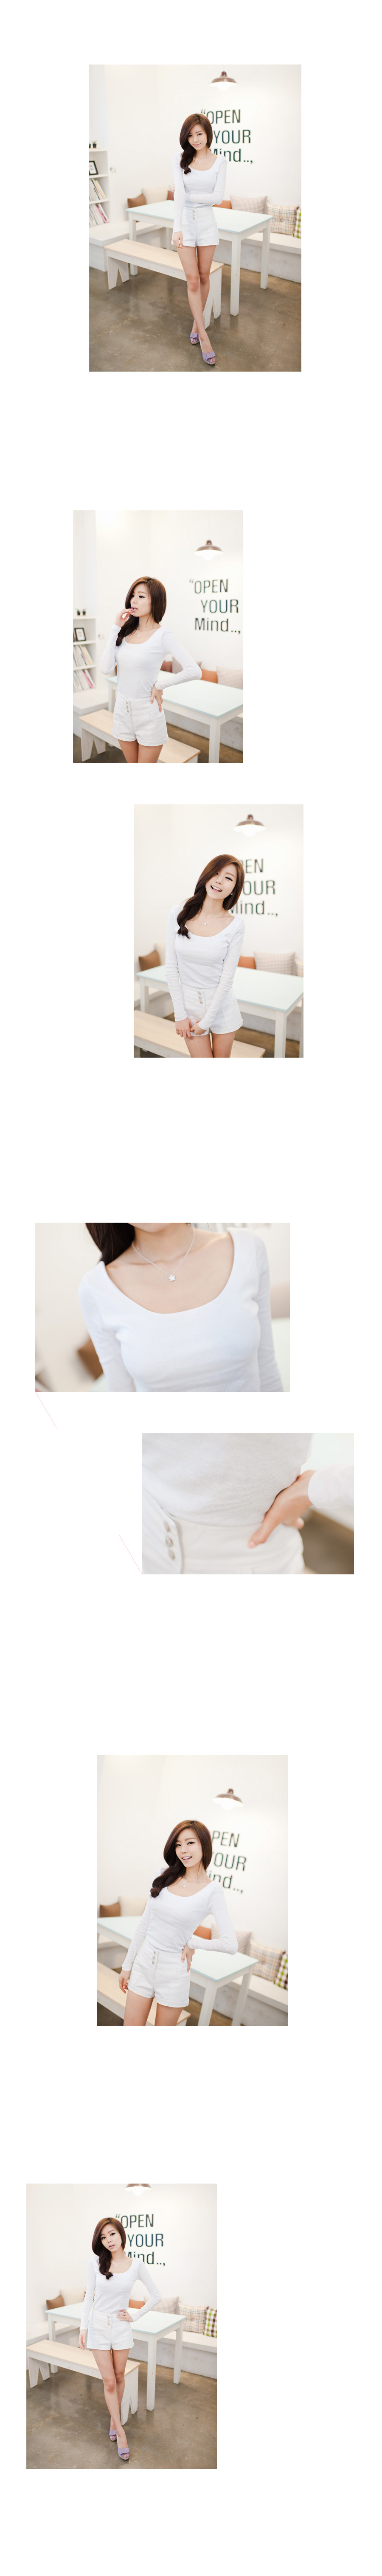 mssefn 2013新款 精版 全棉舒适修身高档打底衫 白色长袖T恤 8619-905